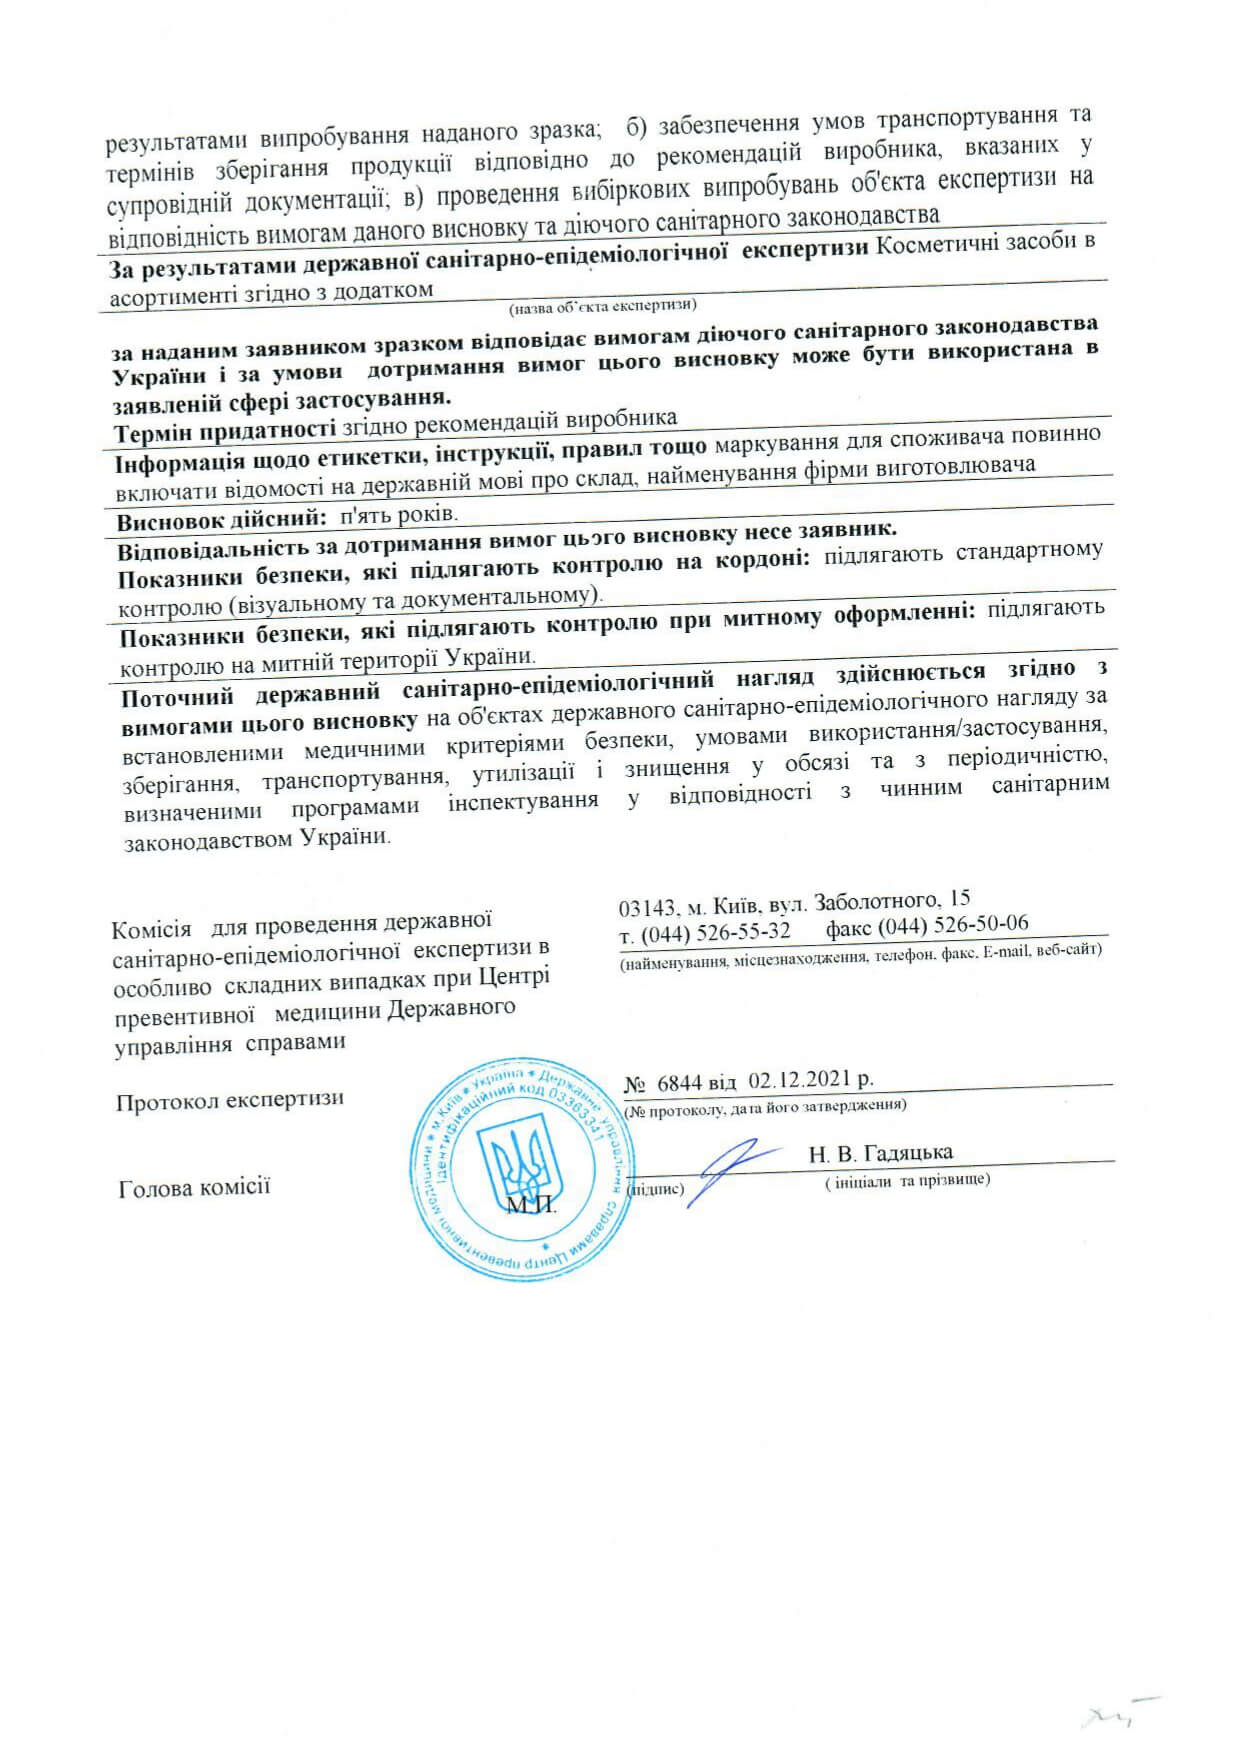 Сертификат  о государственной  регистрации